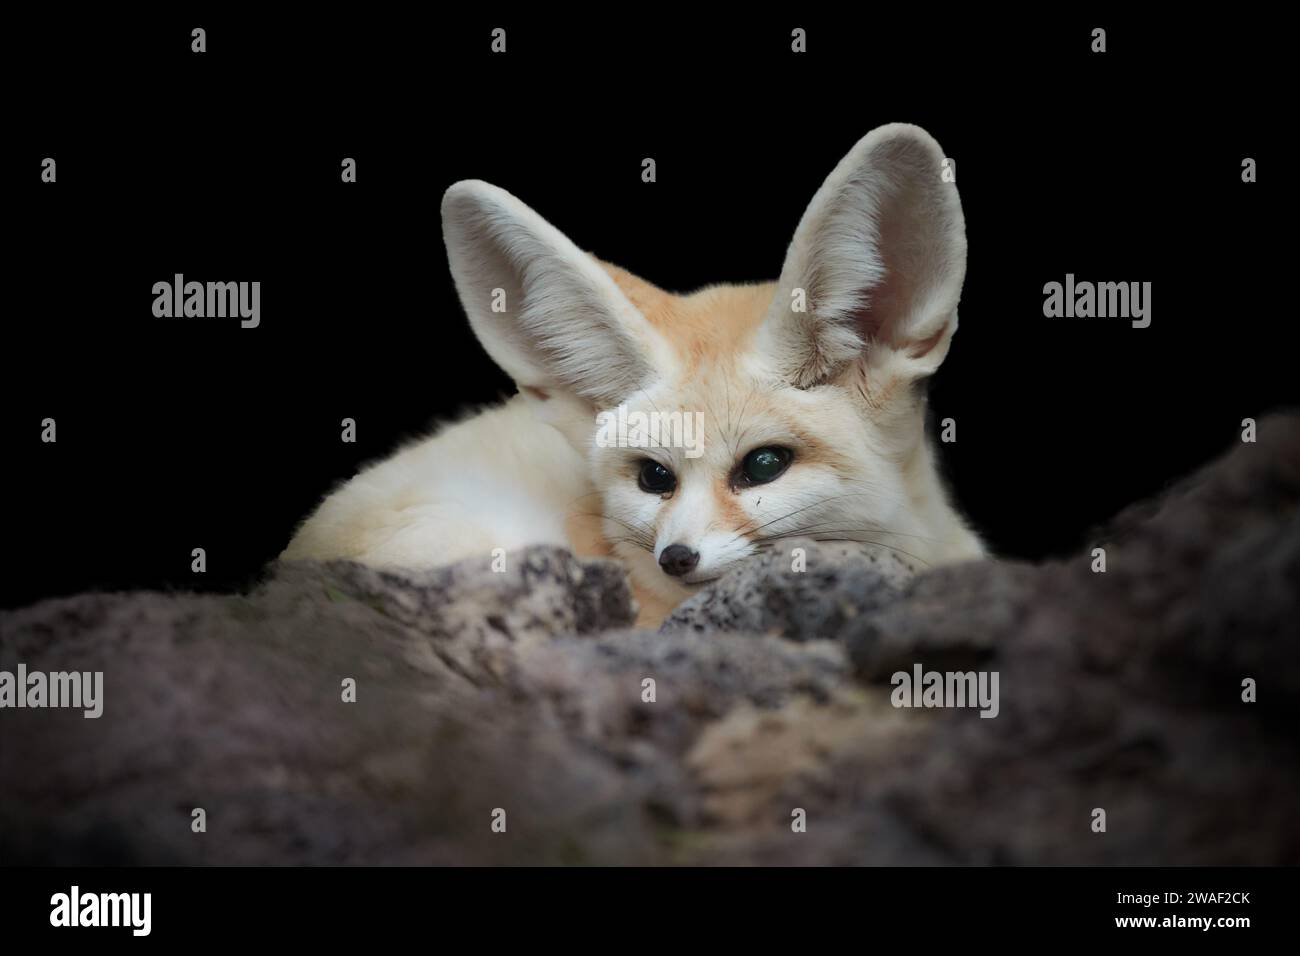 Isolé sur fond noir : renard de Fennec, Vulpes zerda, le plus petit renard originaire des déserts d'Afrique du Nord. Contact visuel direct, grandes oreilles, roche Banque D'Images